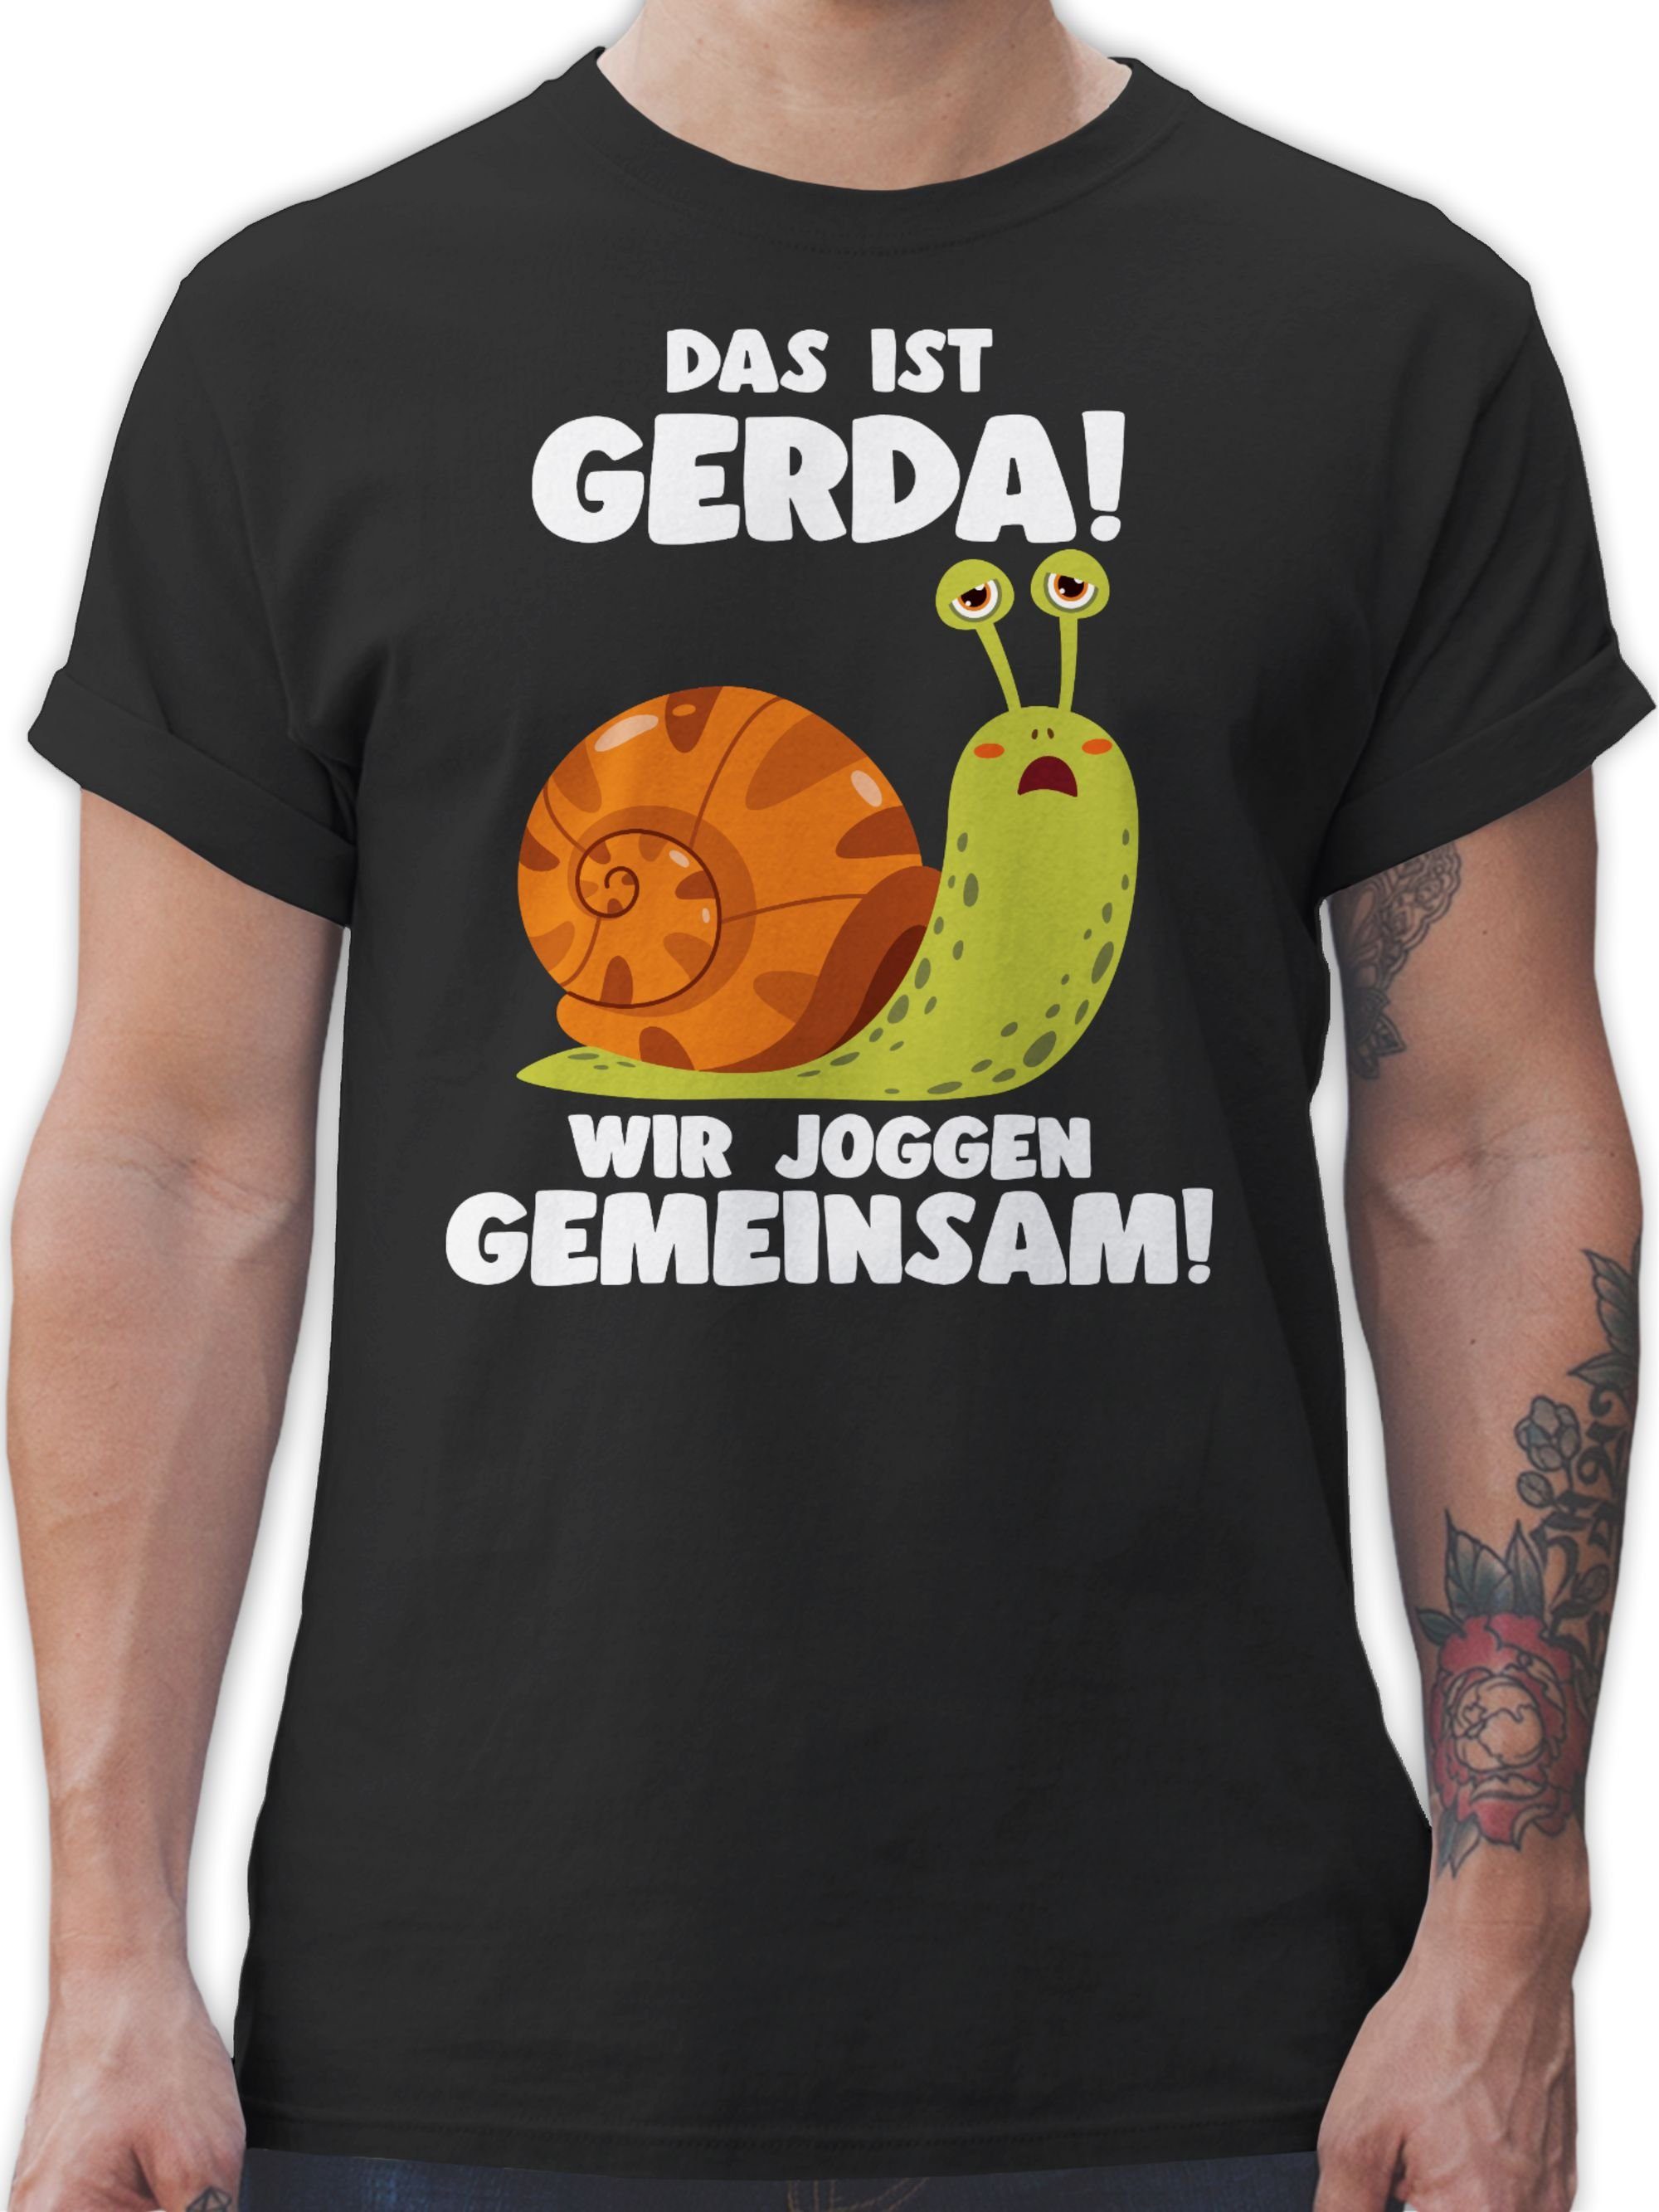 Shirtracer T-Shirt Das ist Gerda Wir joggen gemeinsam - Langsame Schecke Joggen Lustig Sp Wandern Laufen Joggen Zubehör 01 Schwarz